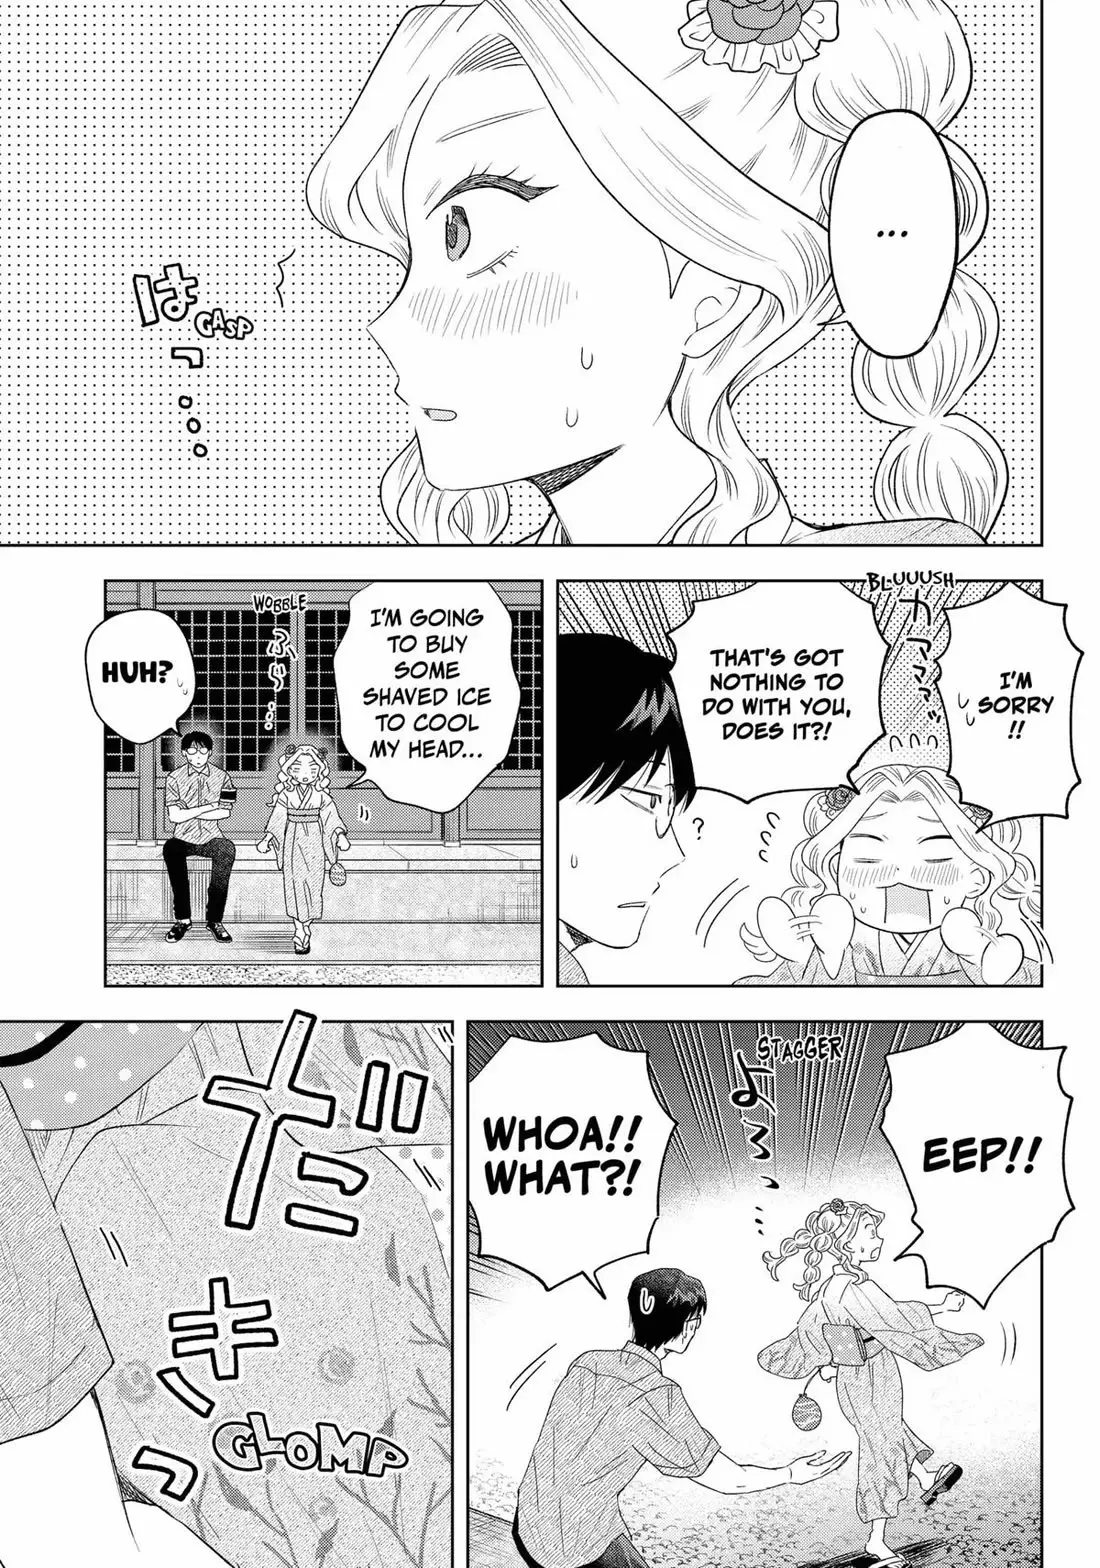 Tsuruko Returns The Favor - 19 page 17-ab547b89